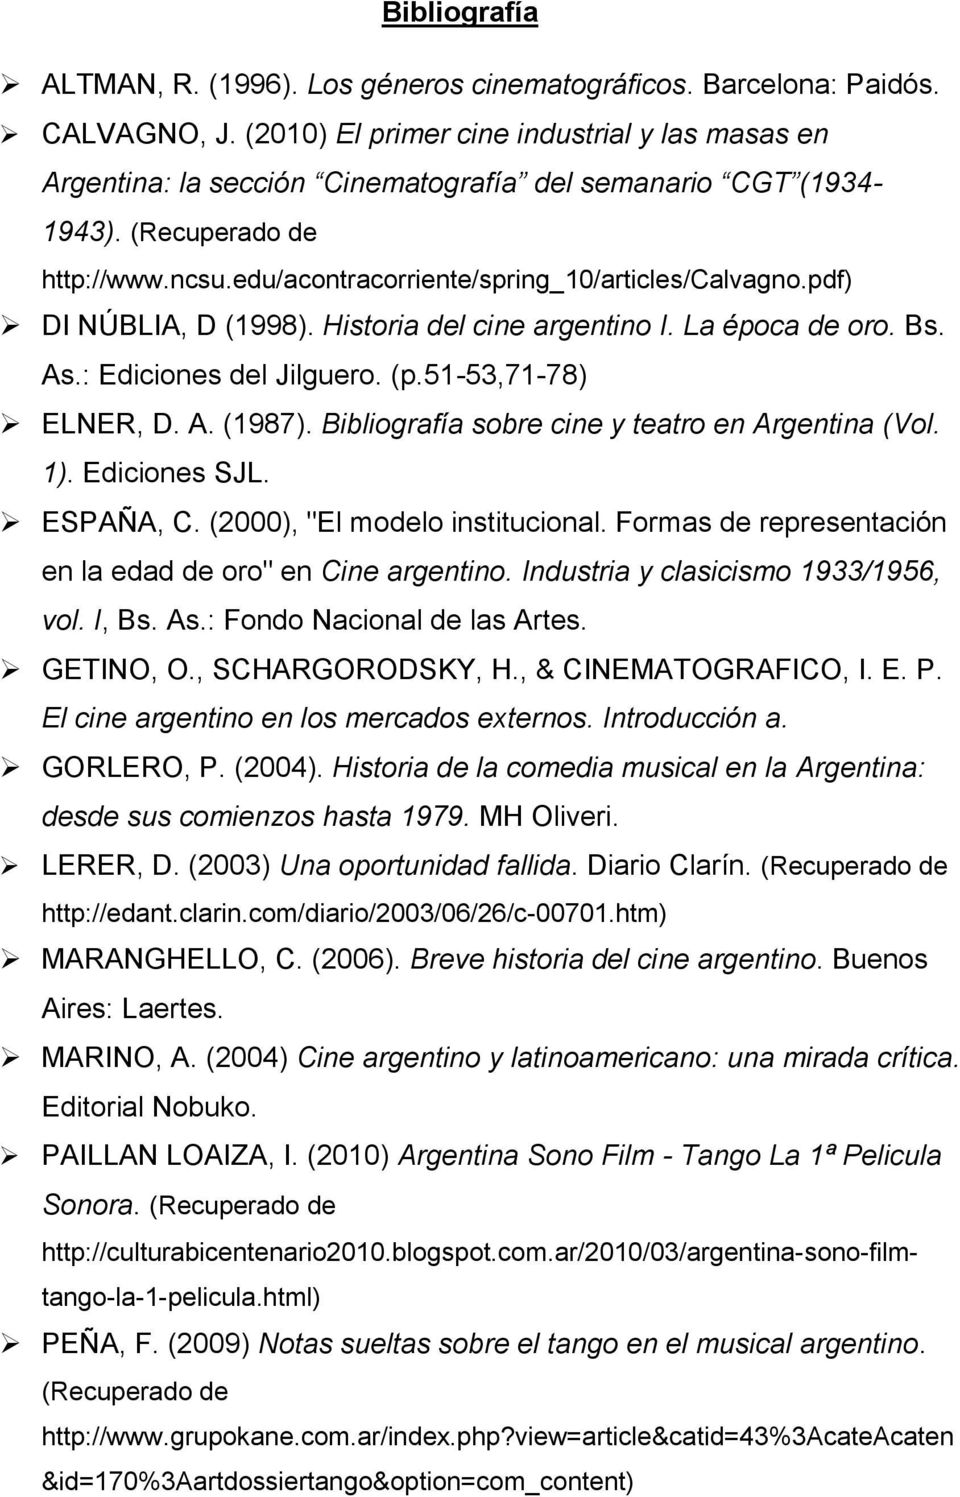 pdf) DI NÚBLIA, D (1998). Historia del cine argentino I. La época de oro. Bs. As.: Ediciones del Jilguero. (p.51-53,71-78) ELNER, D. A. (1987). Bibliografía sobre cine y teatro en Argentina (Vol. 1).